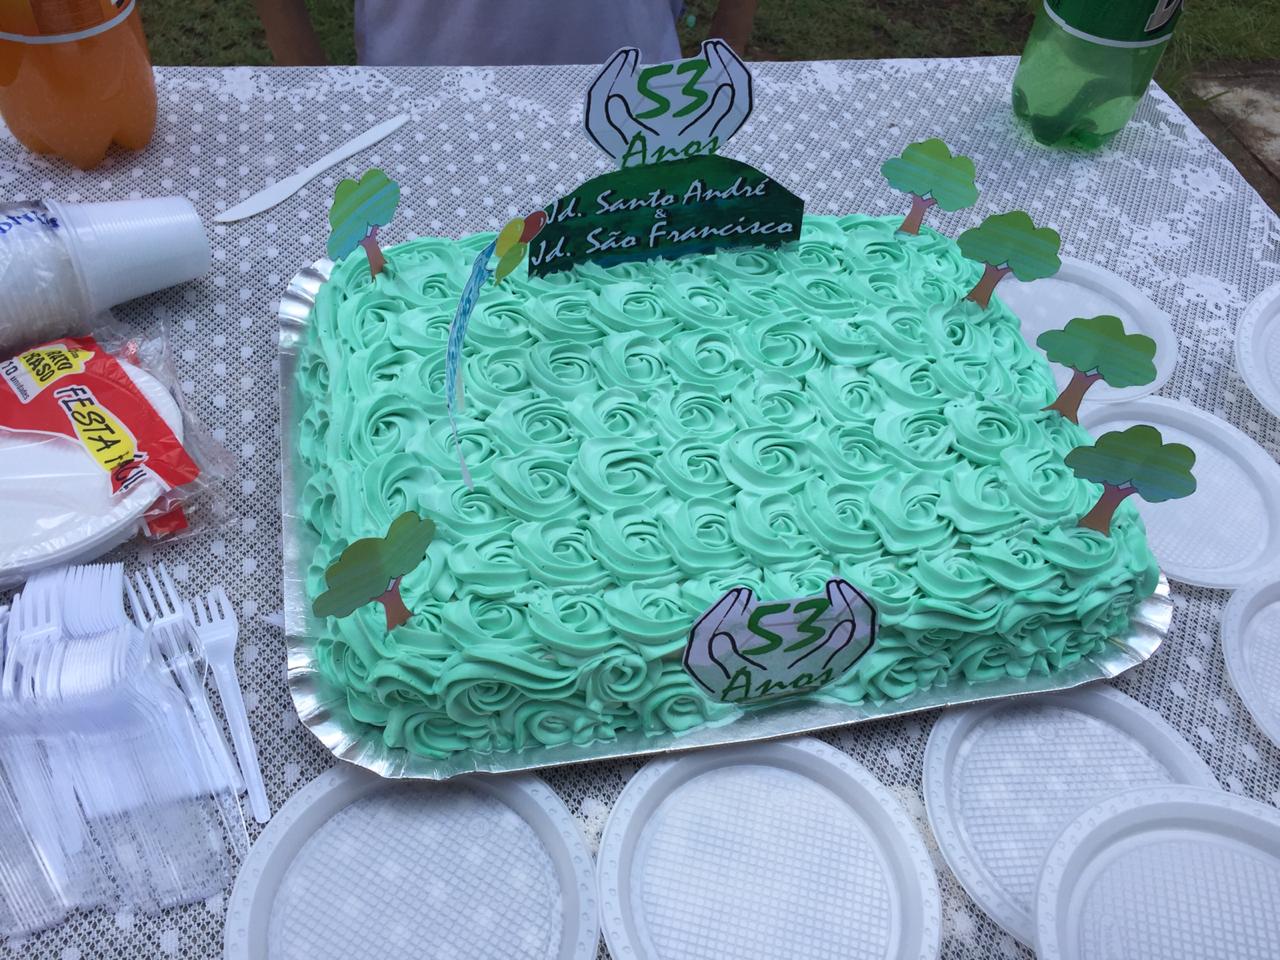 Bolo de aniversário, com glacê na cor verde, placa 53 anos Jardim Santo André e Jardim São Francisco. Miniaturas de árvores foram colocadas nas bordas superiores do bolo. Copos, pratinhos e talheres de plástico estão ao redor do bolo.